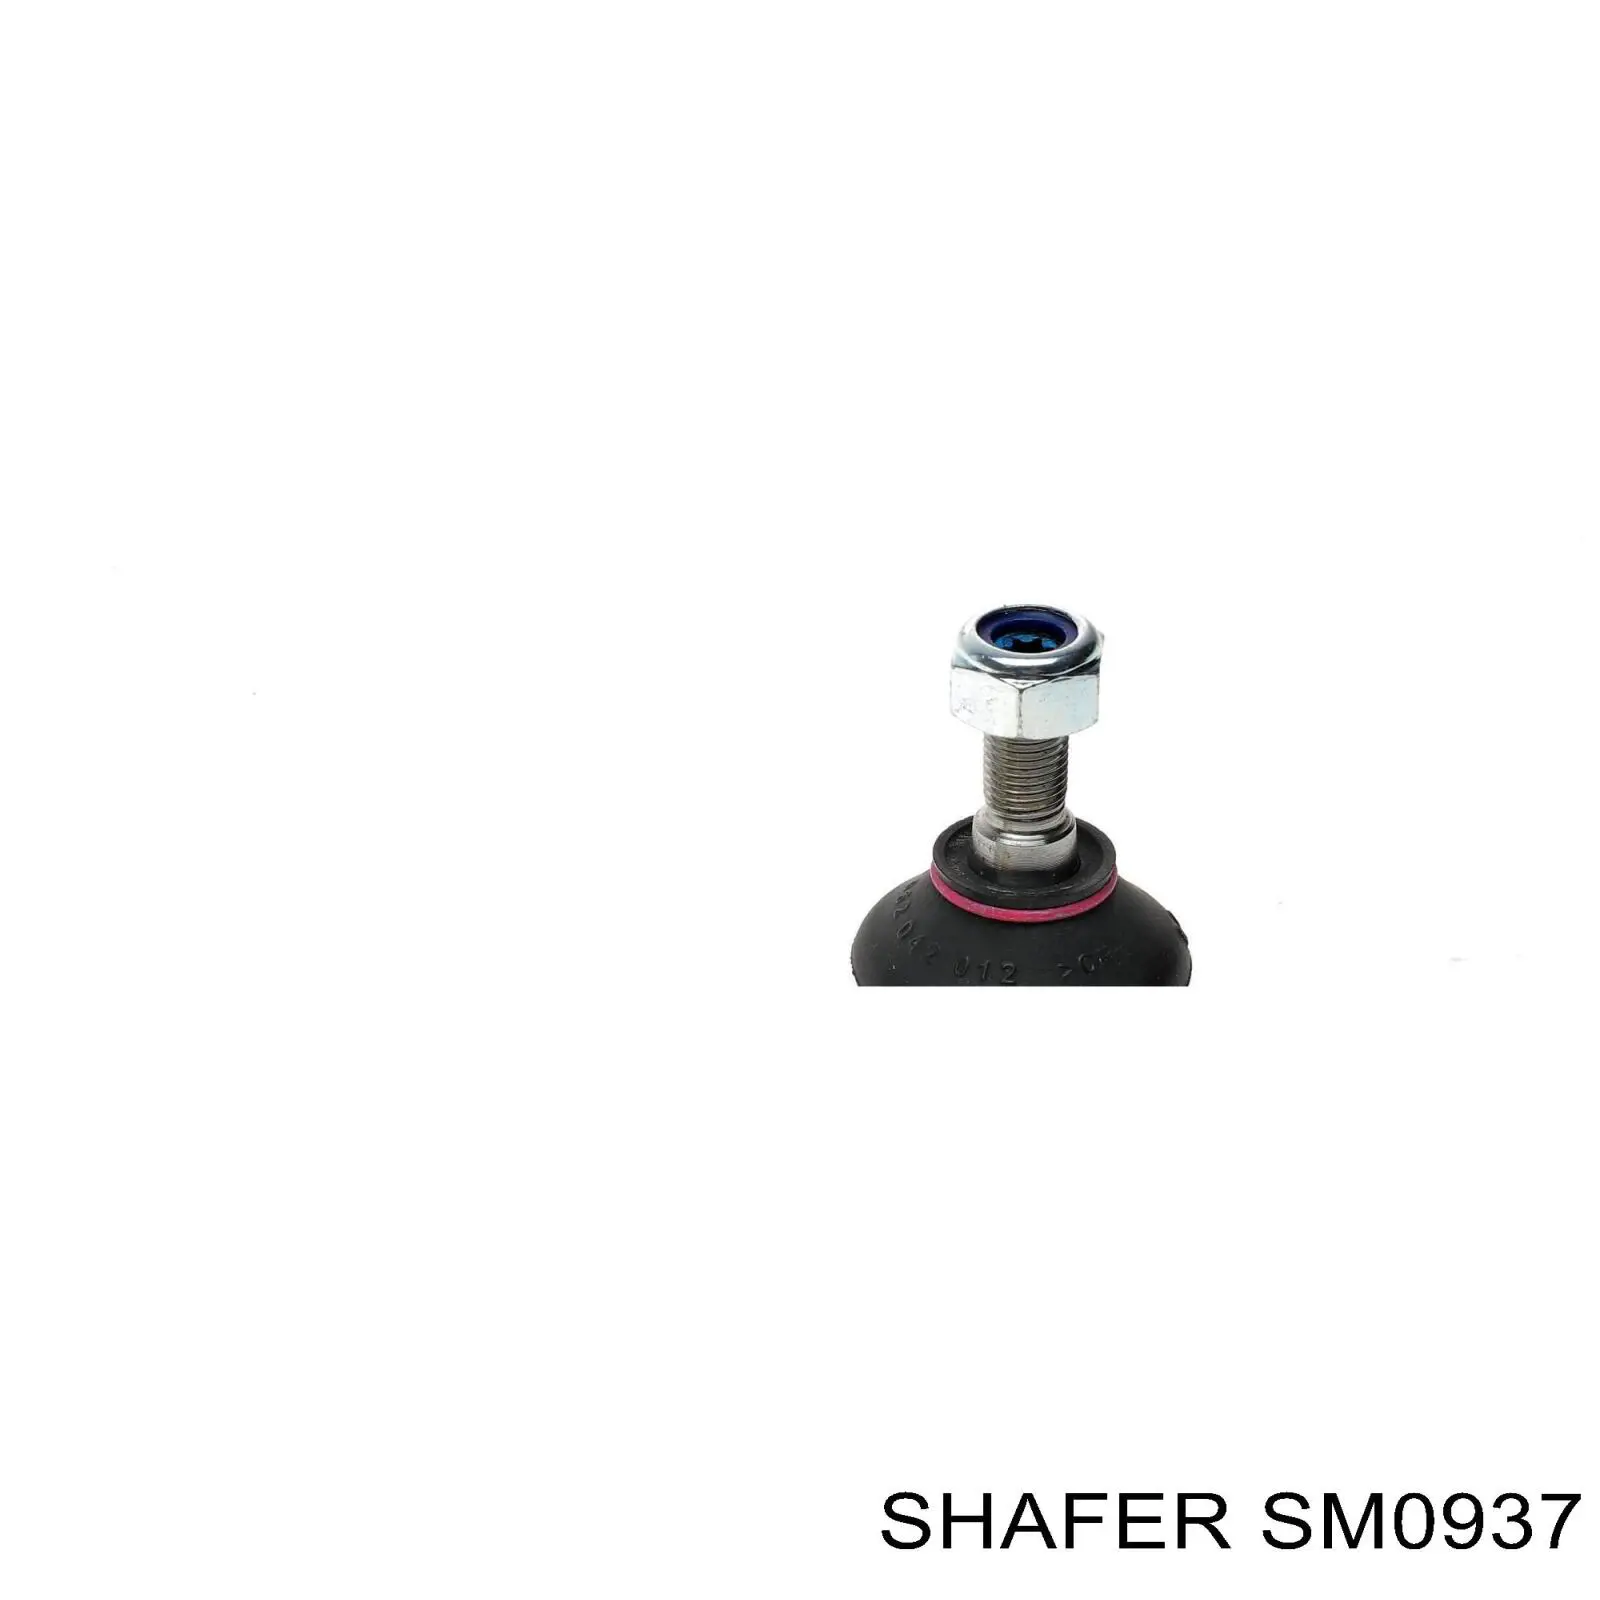 SM0937 Shafer rótula barra de acoplamiento exterior